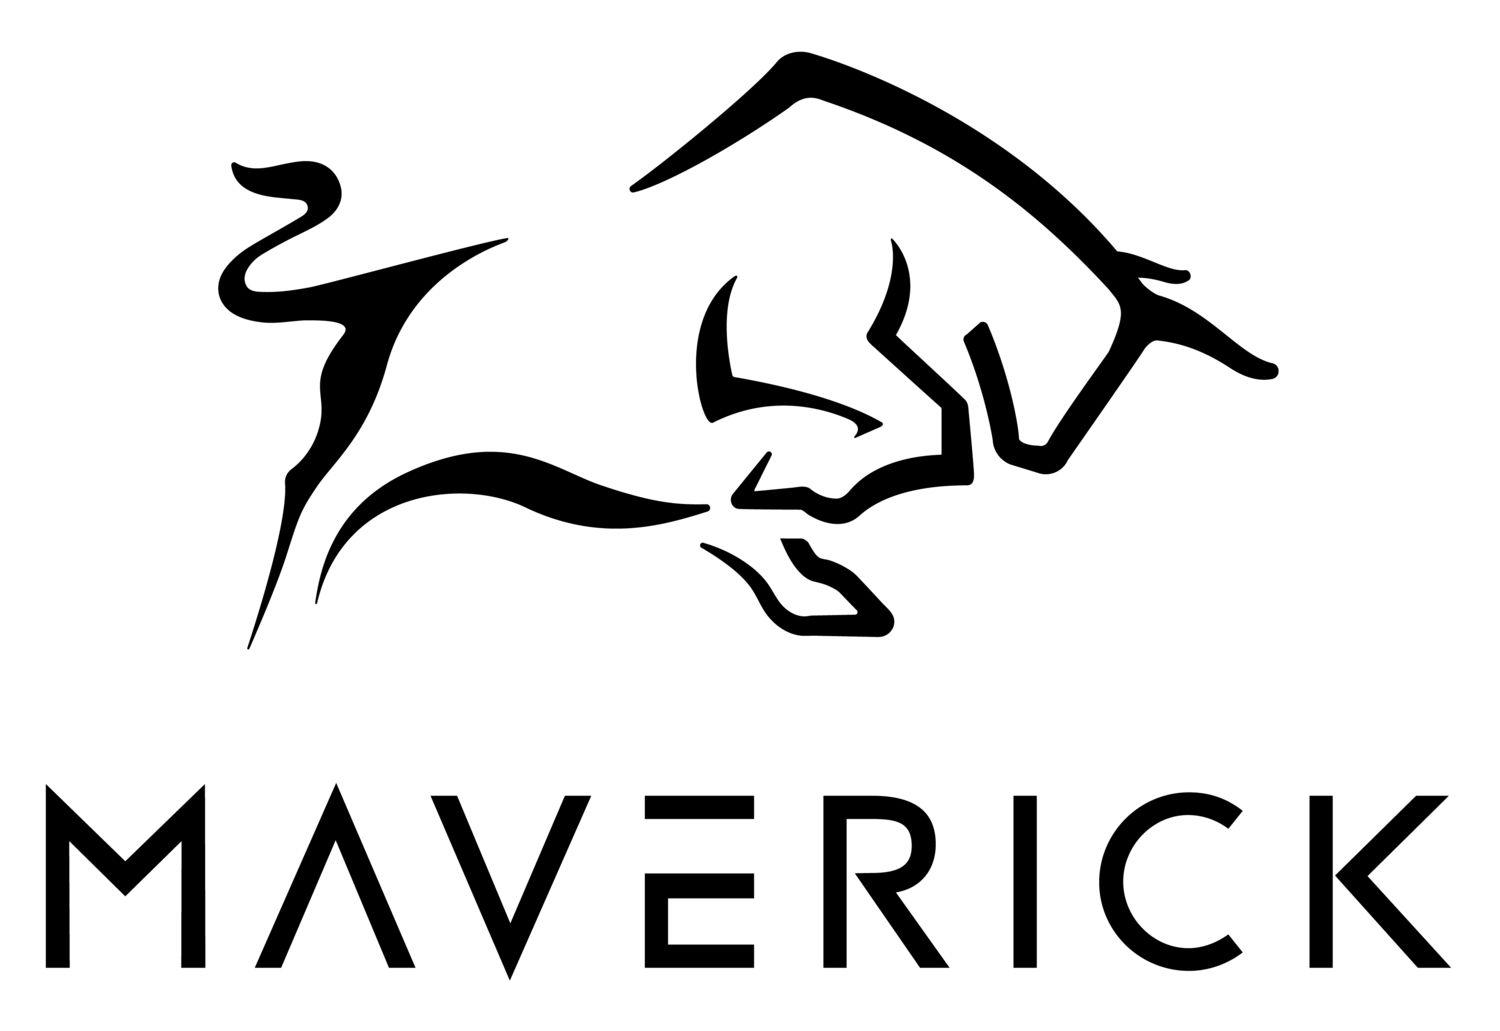 Mavrick Logo - Let's talk